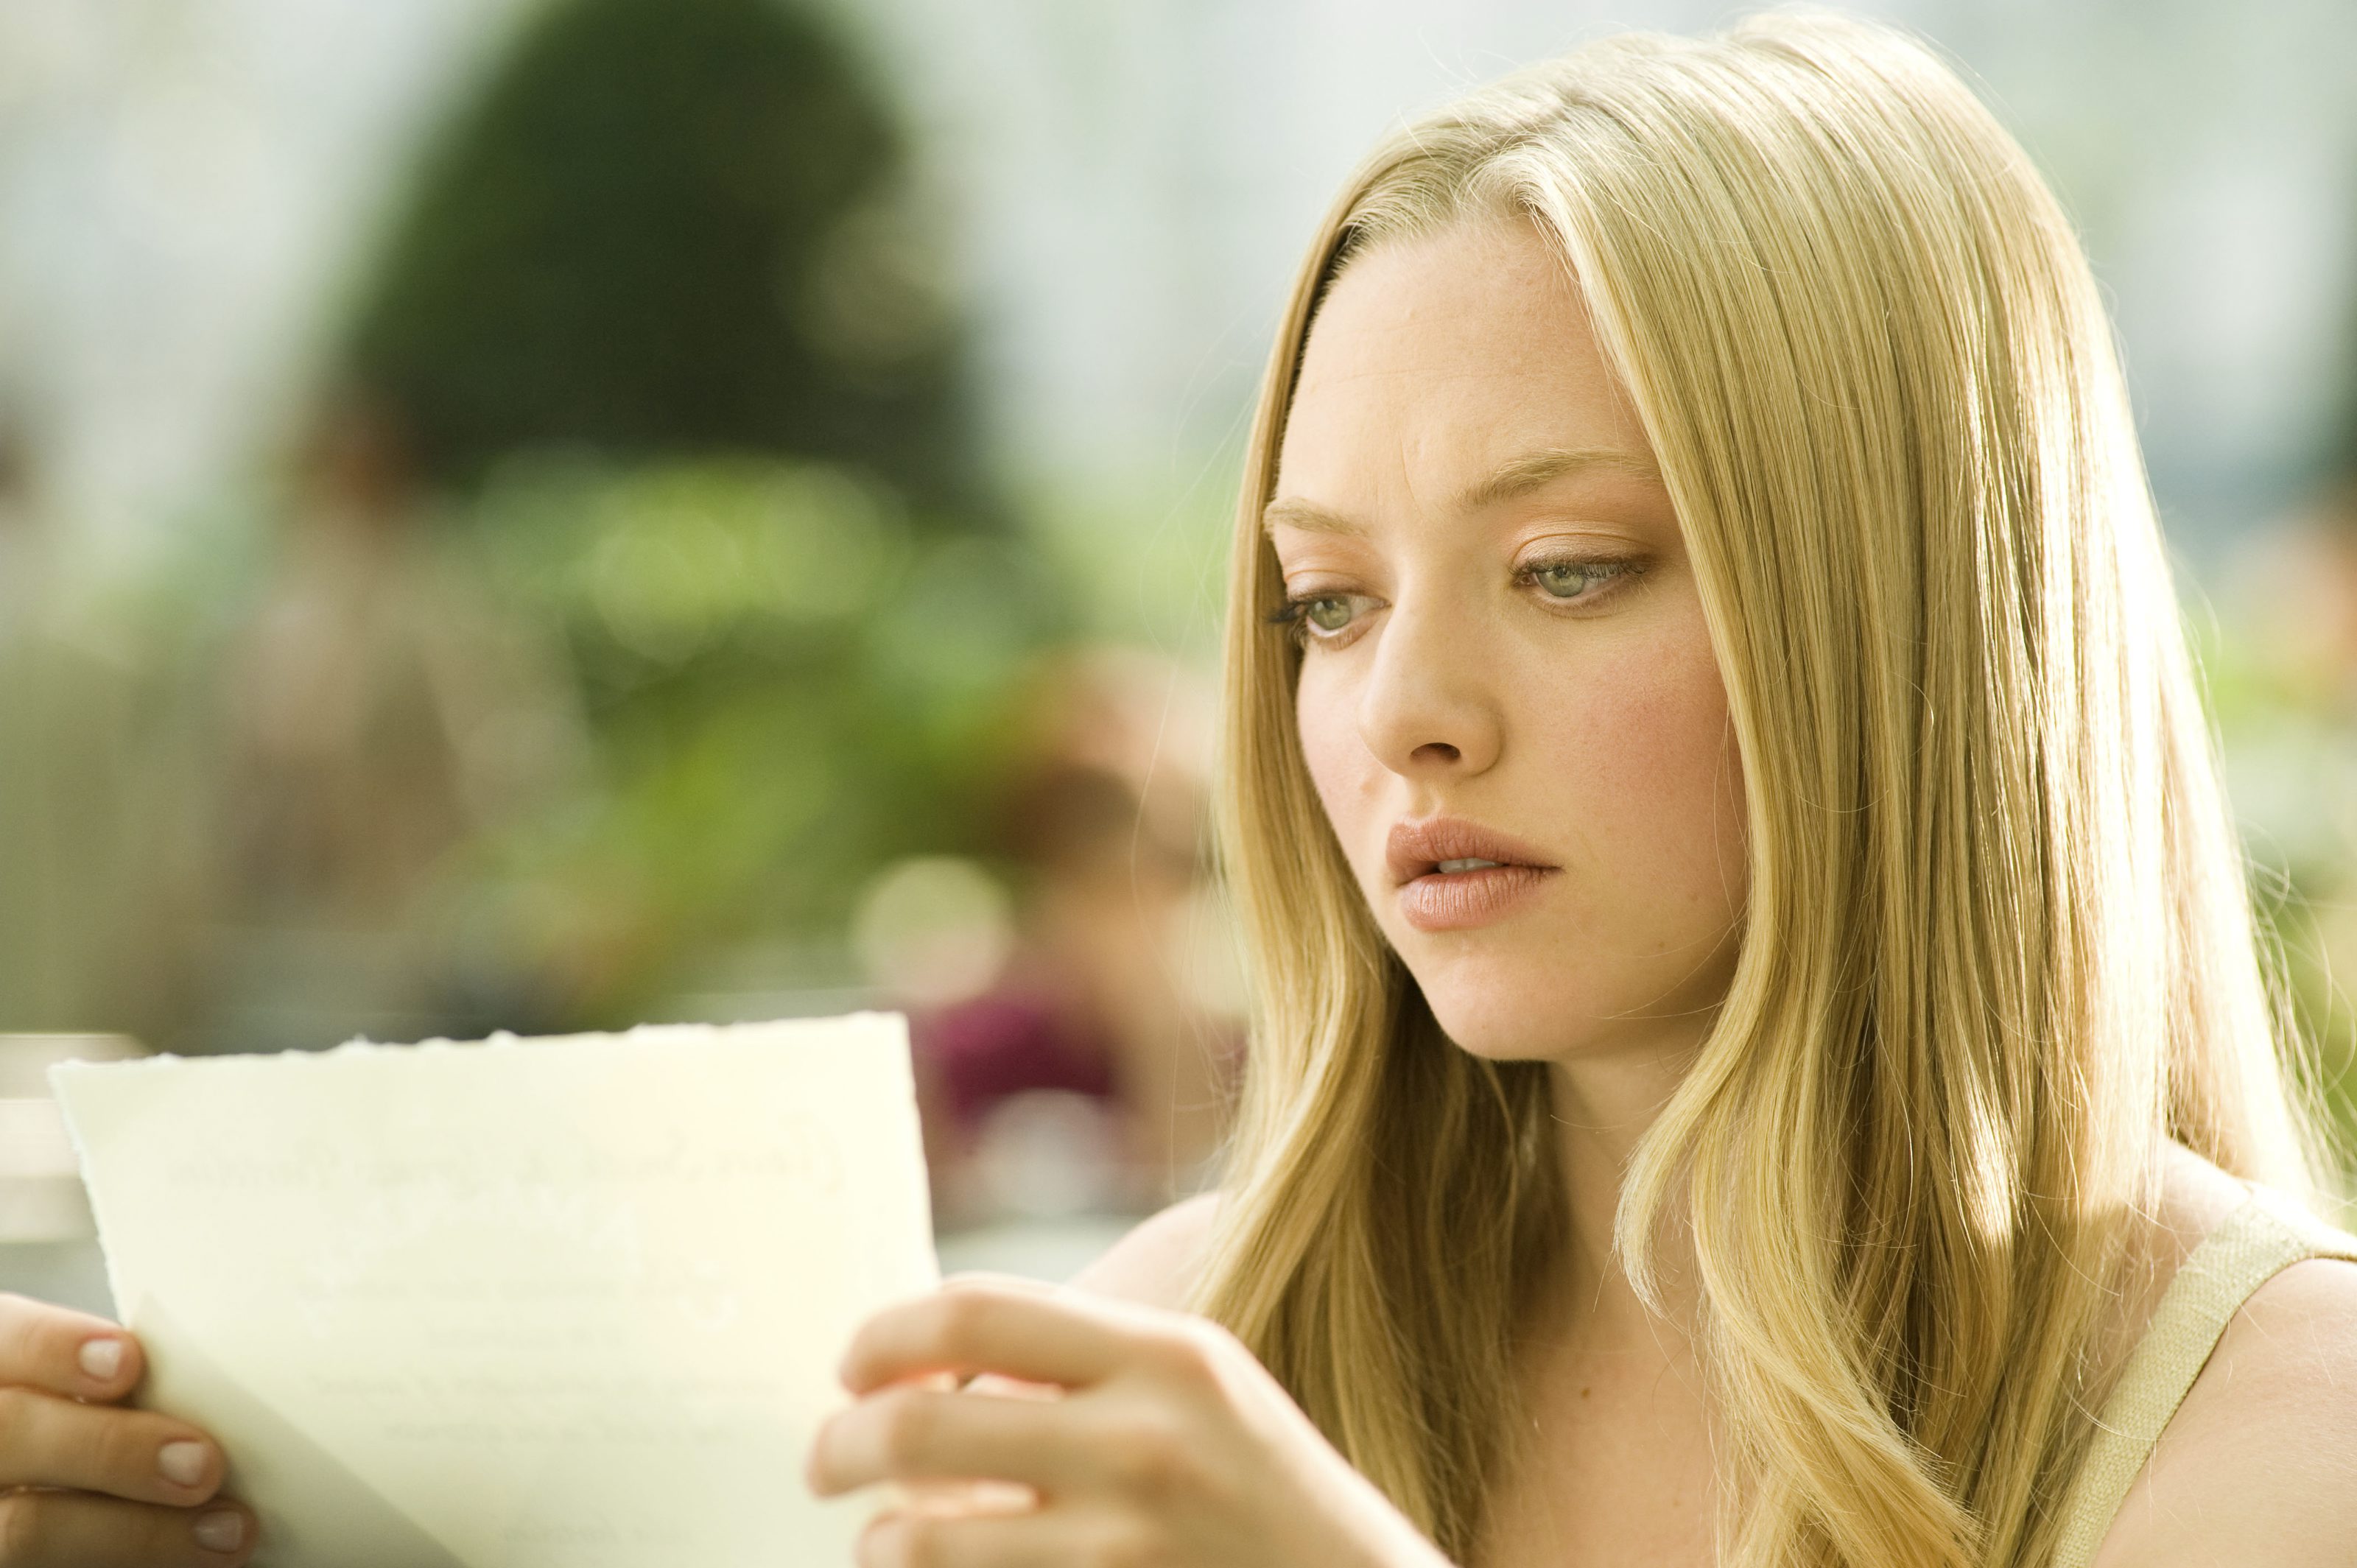 Amanda i kommande filmen "Letters to Juliet", biopremiär maj 2010. 